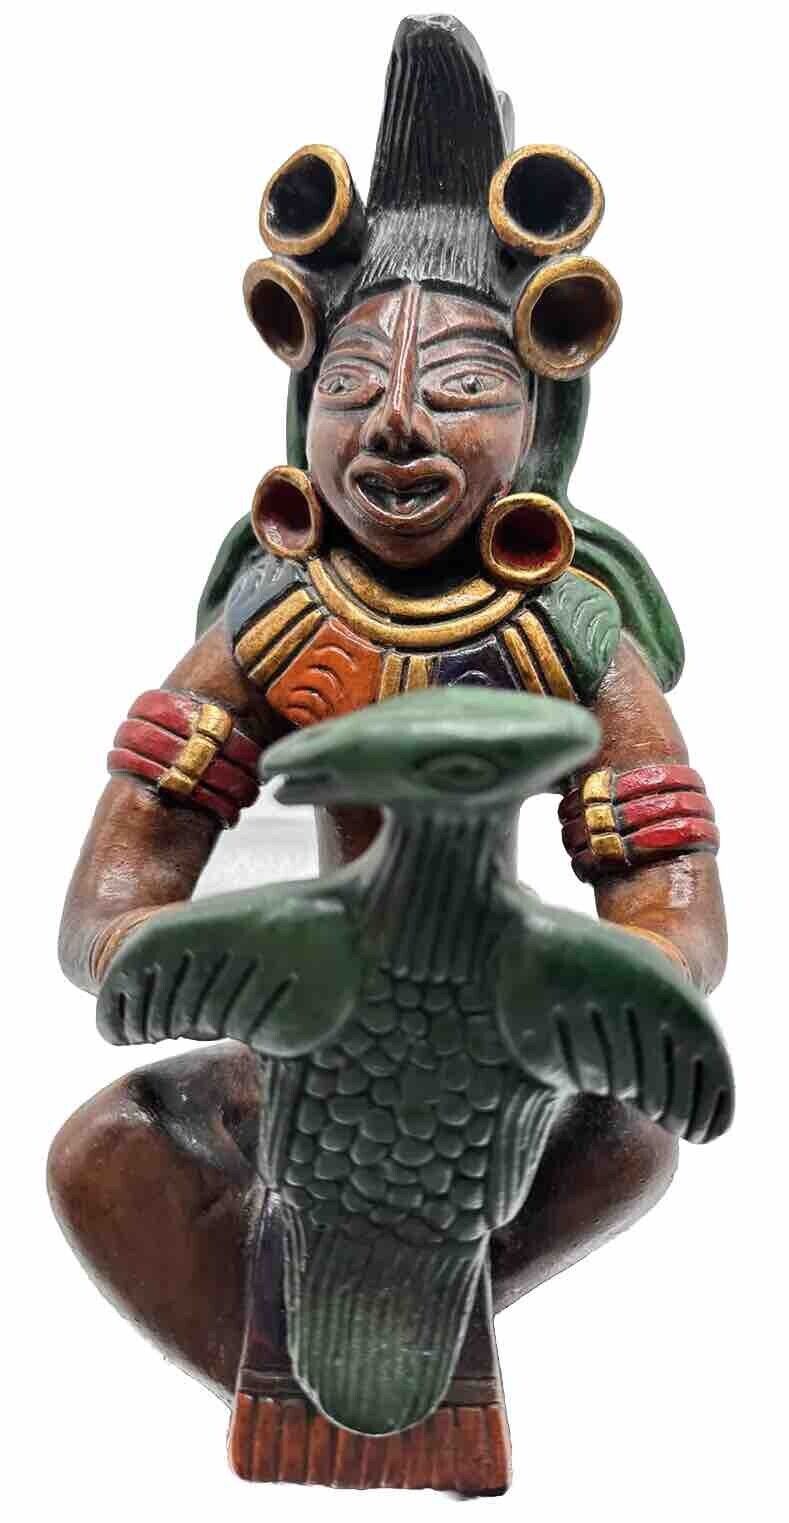 Mexican Folk Art Aztec Autinah Mexico Figure Rare Antique Vintage VTG Figurine